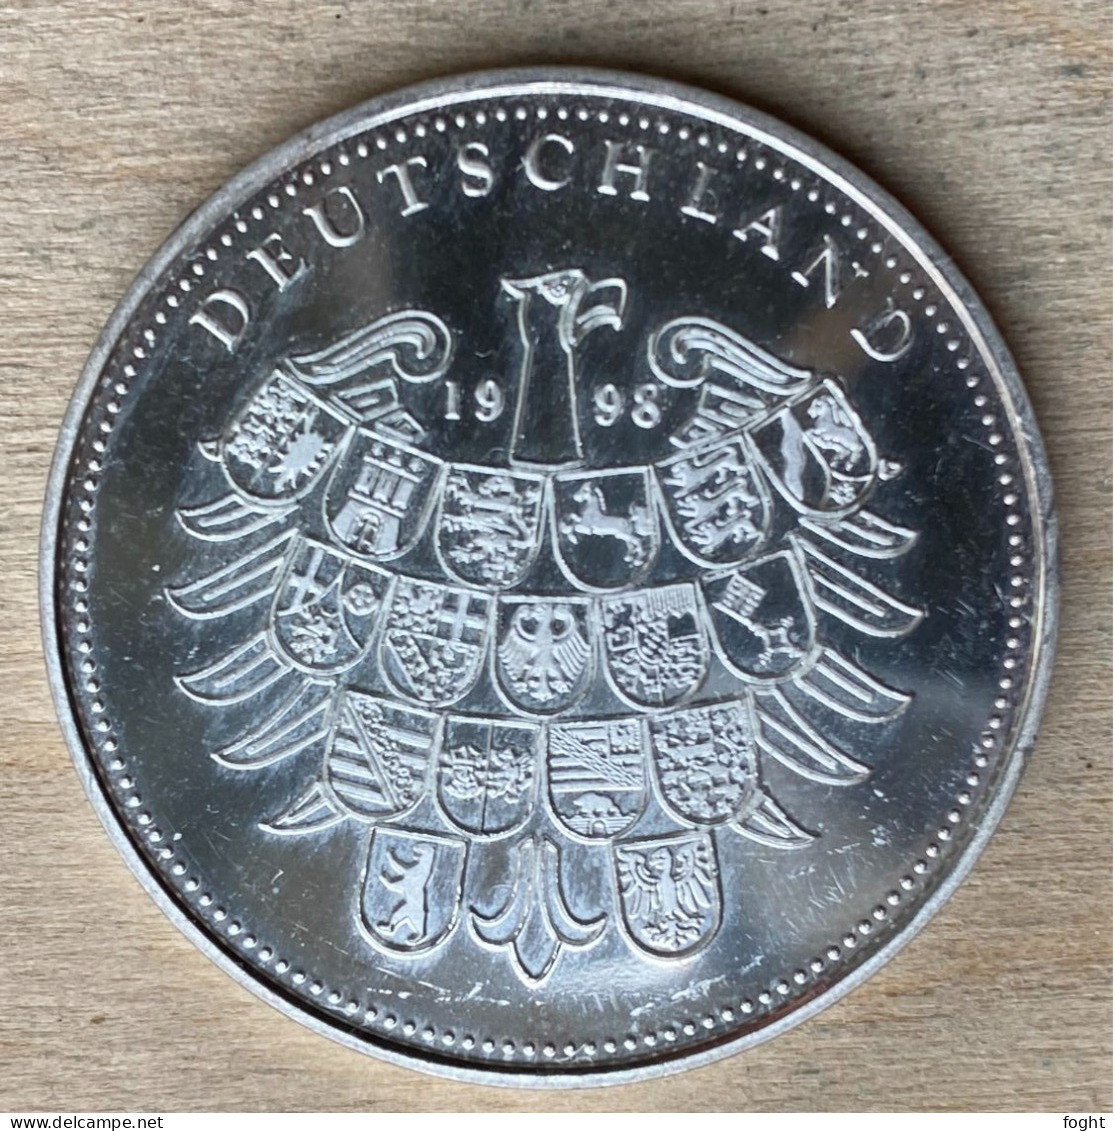 1998 Germany /BRD Medaille  50 Jahre Deutsche Währung .500 Silber,PP,7225 - Professionals/Firms